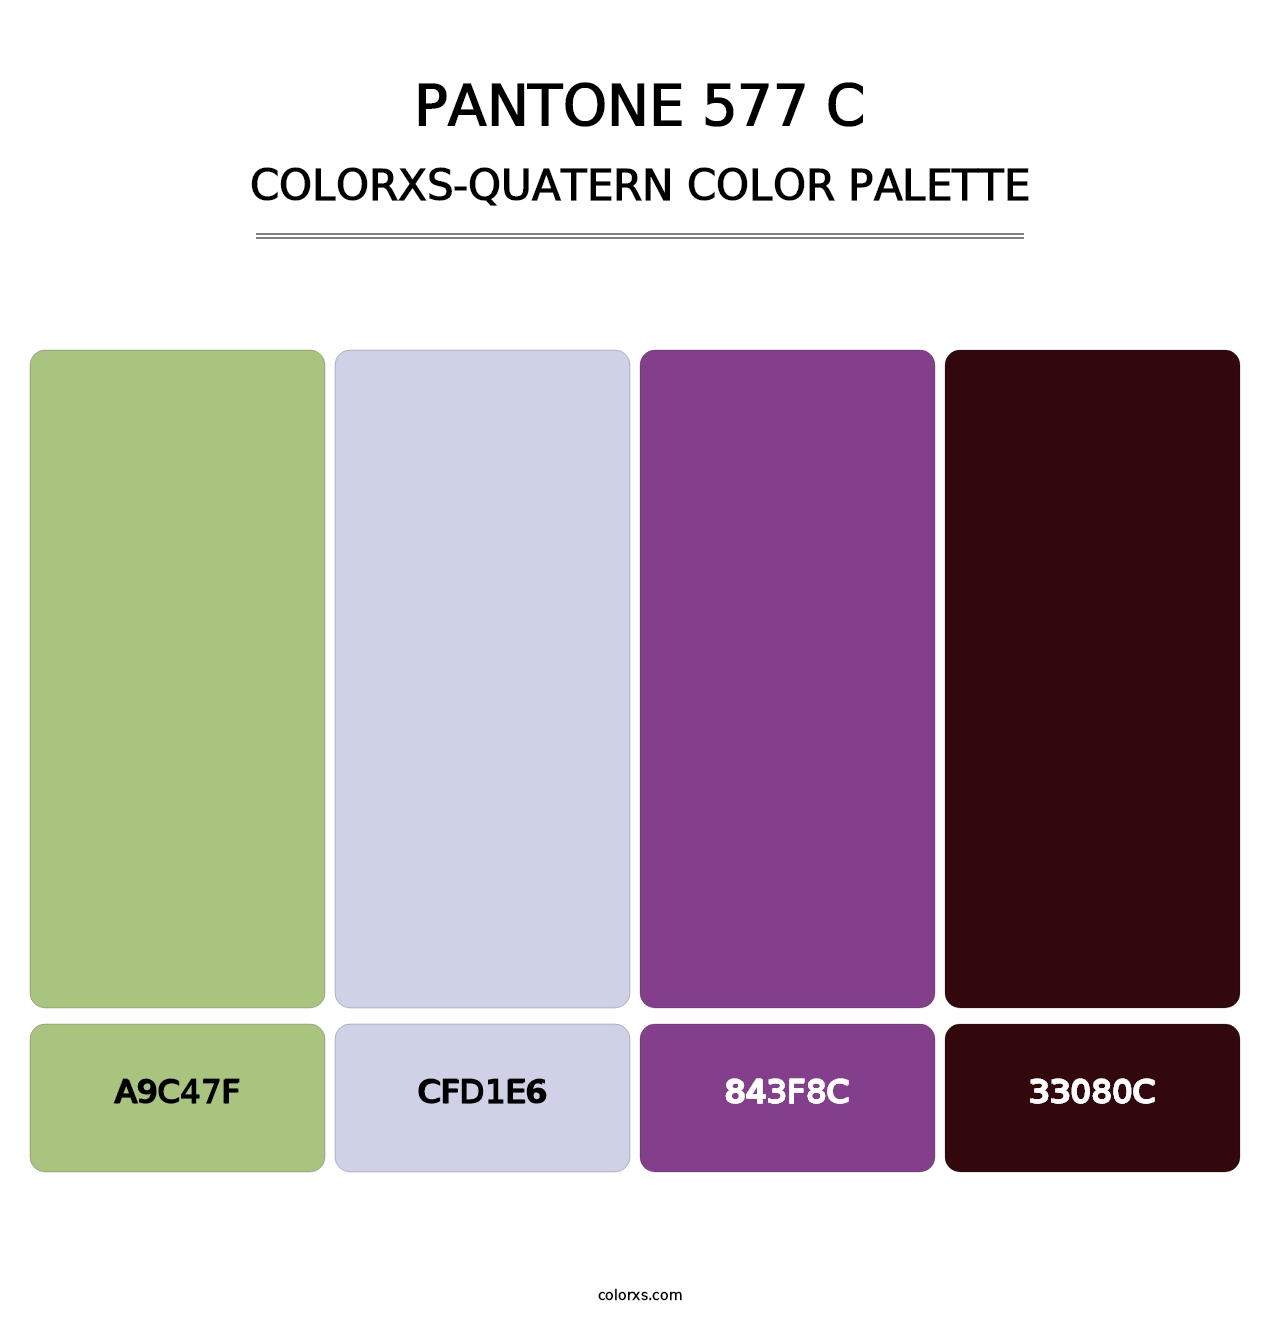 PANTONE 577 C - Colorxs Quatern Palette